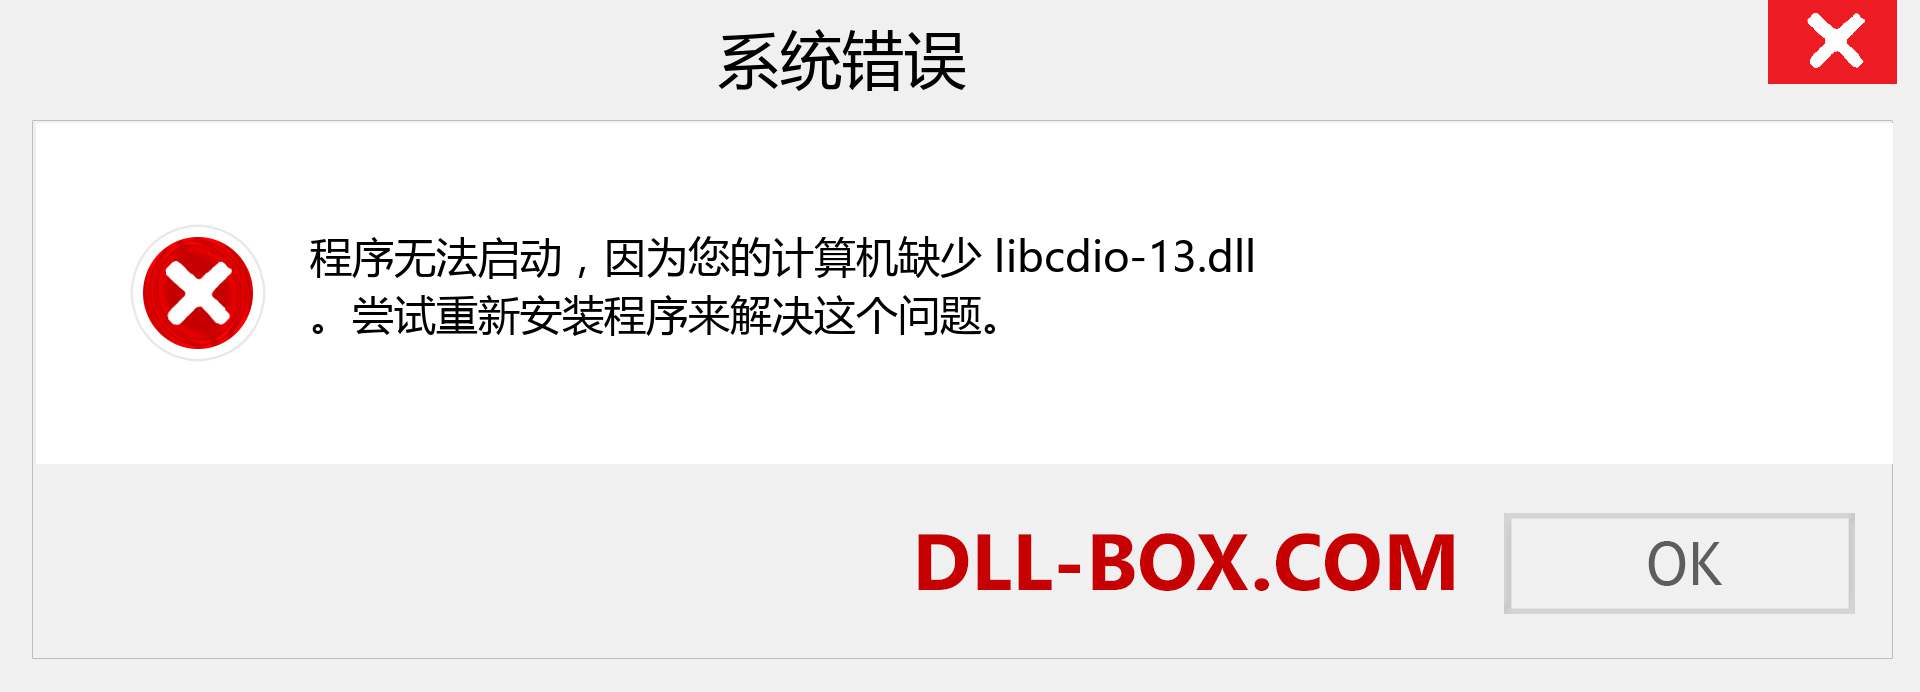 libcdio-13.dll 文件丢失？。 适用于 Windows 7、8、10 的下载 - 修复 Windows、照片、图像上的 libcdio-13 dll 丢失错误